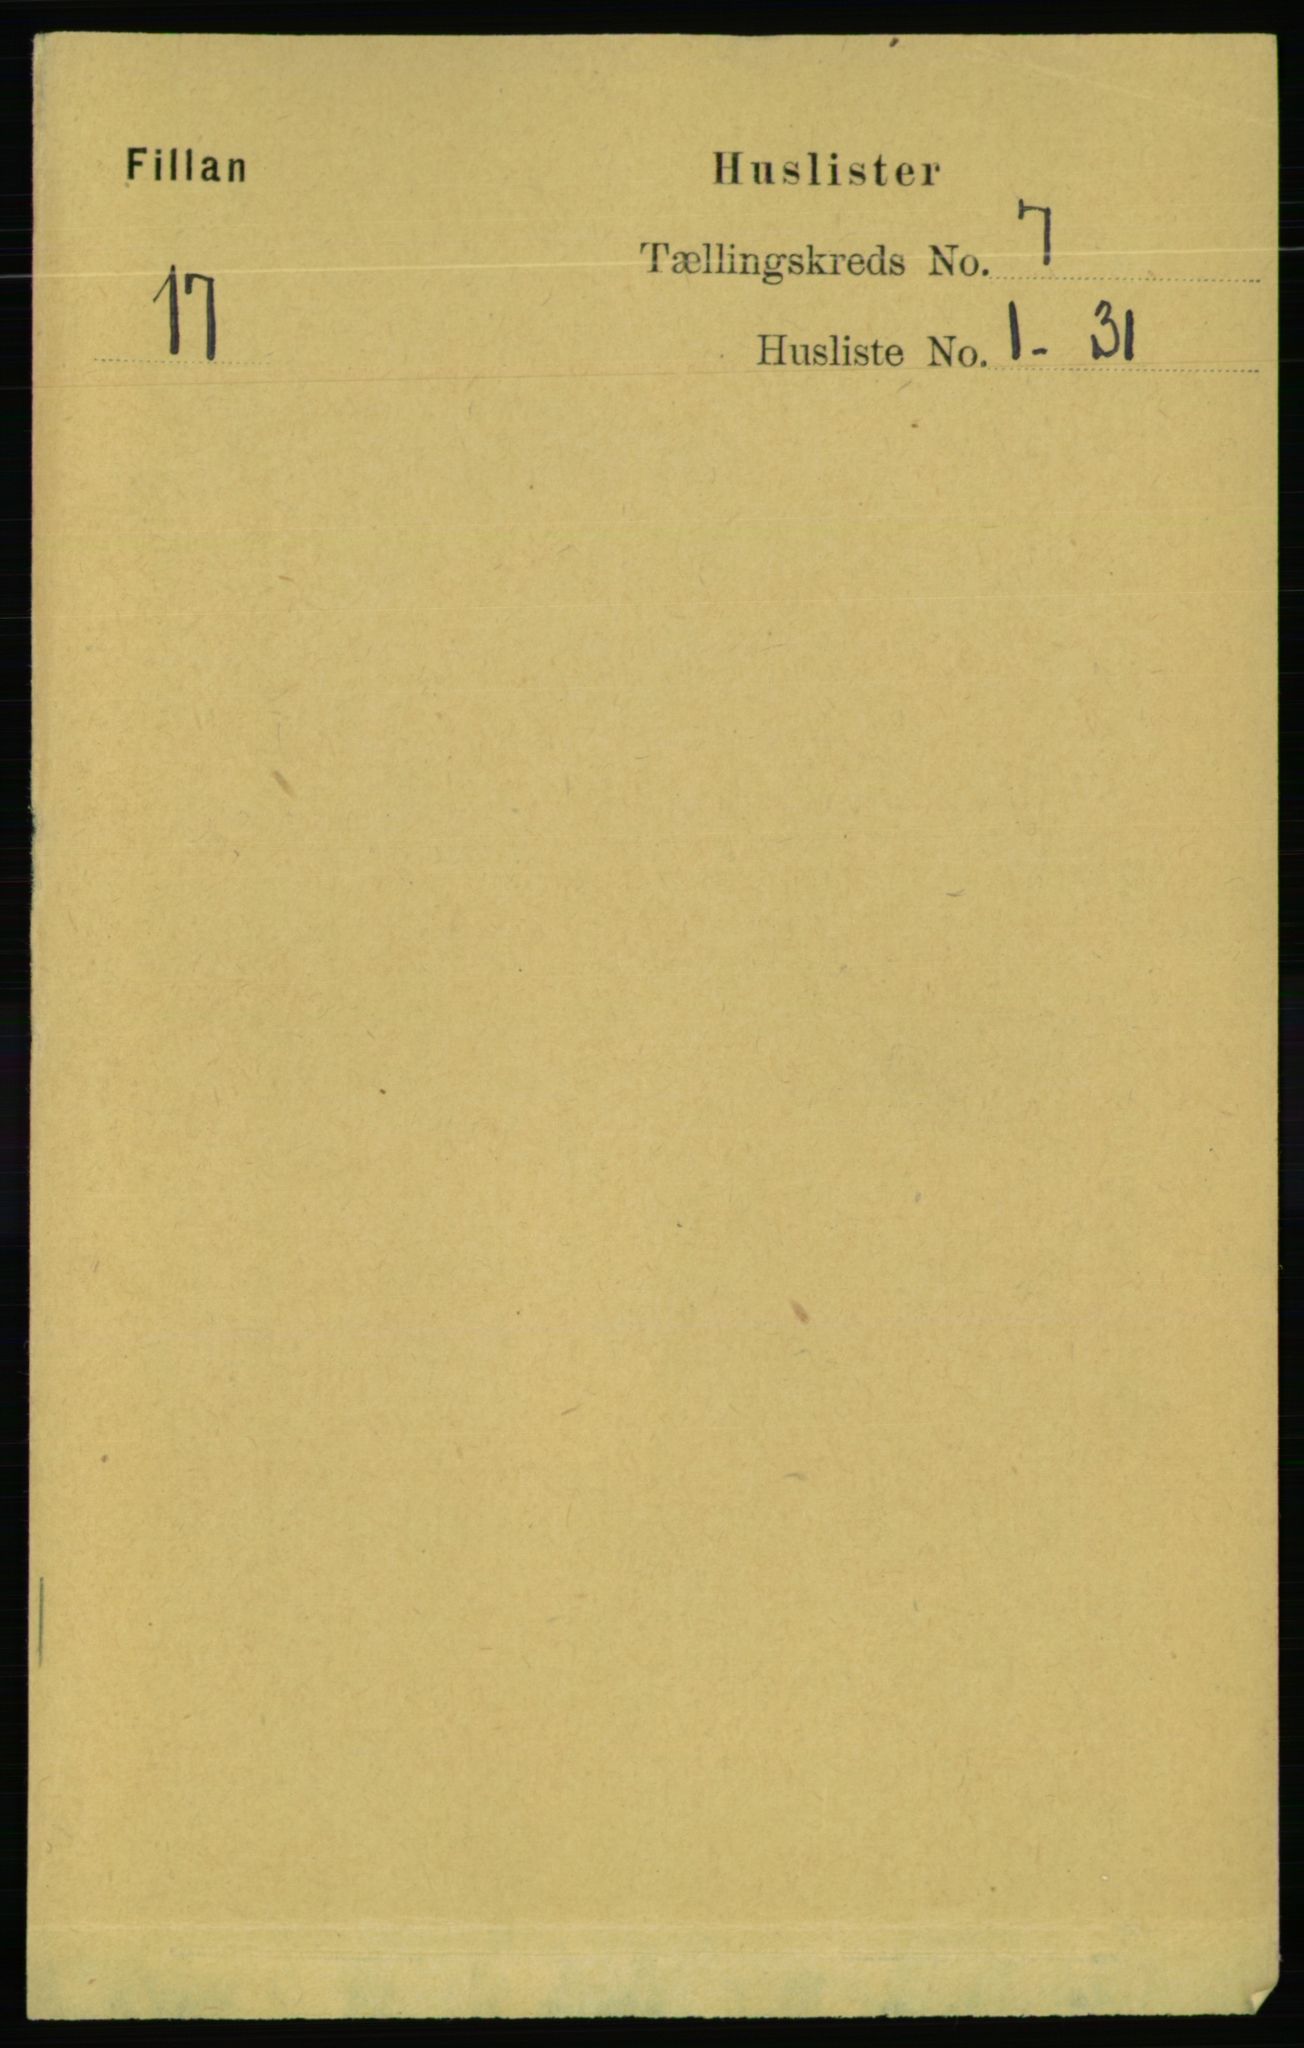 RA, Folketelling 1891 for 1616 Fillan herred, 1891, s. 1547